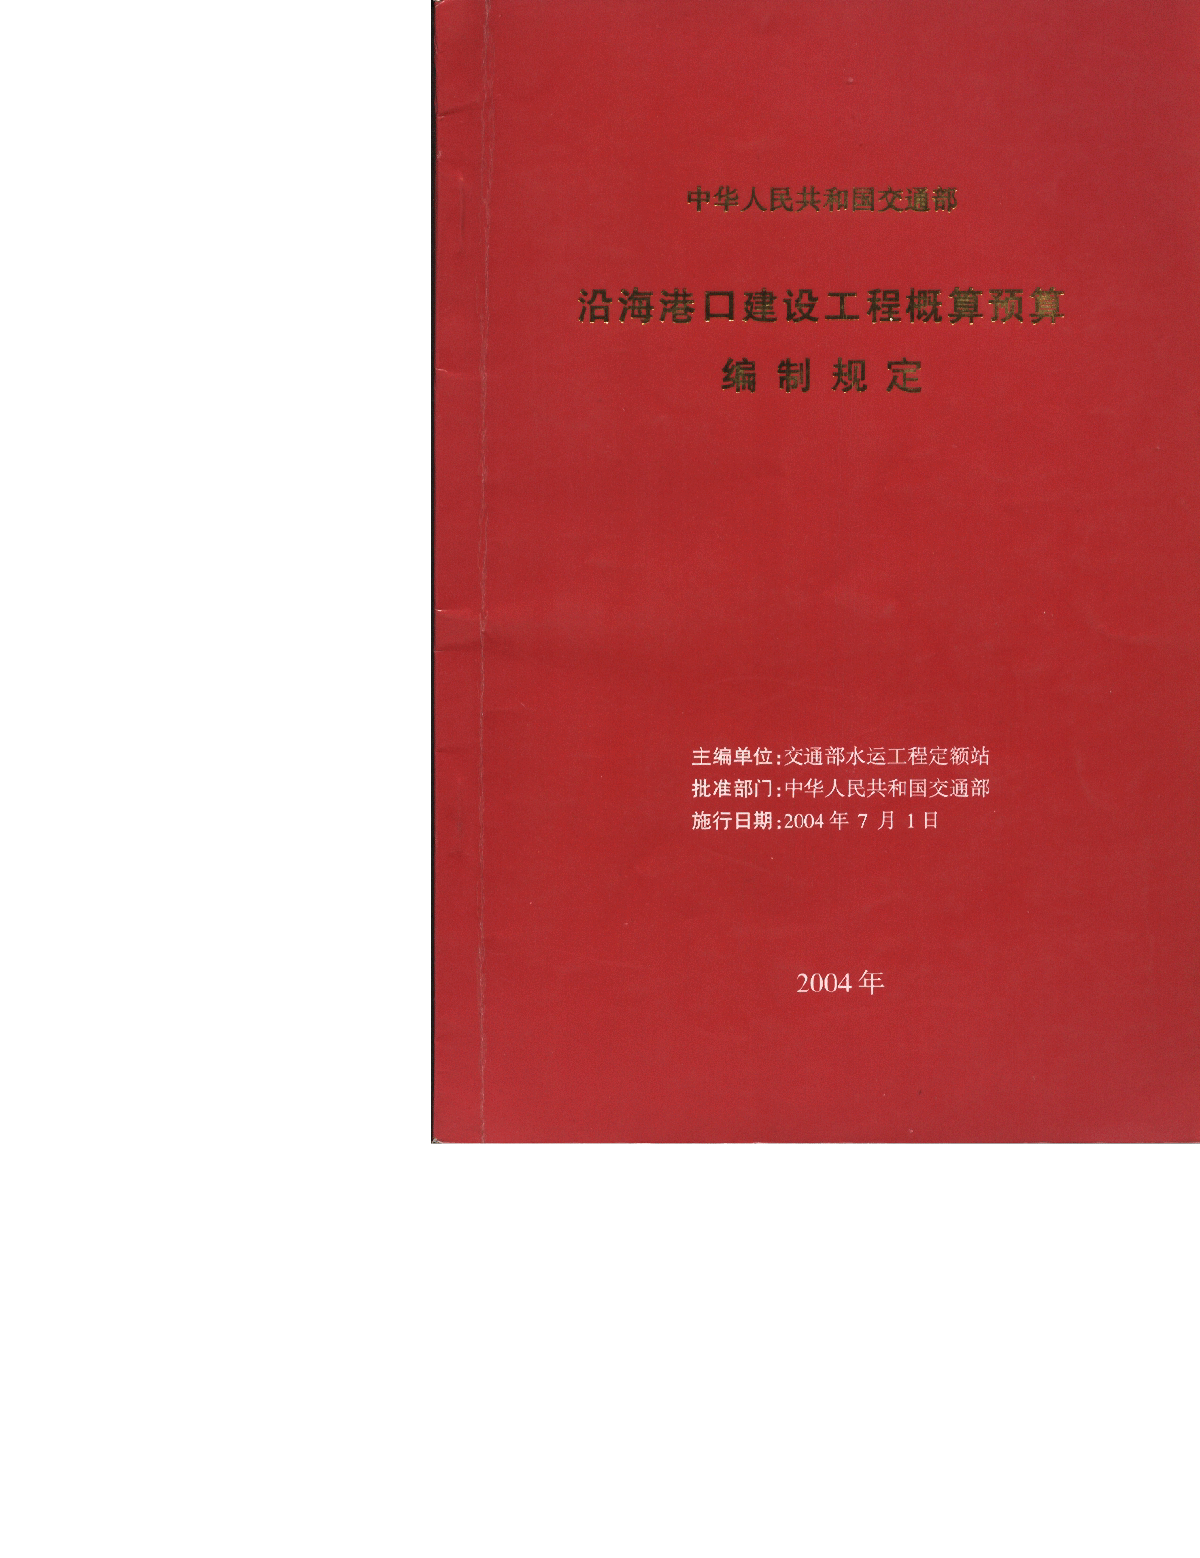 《沿海港口建设工程概算预算编制规定》(交水发[2004]247号)